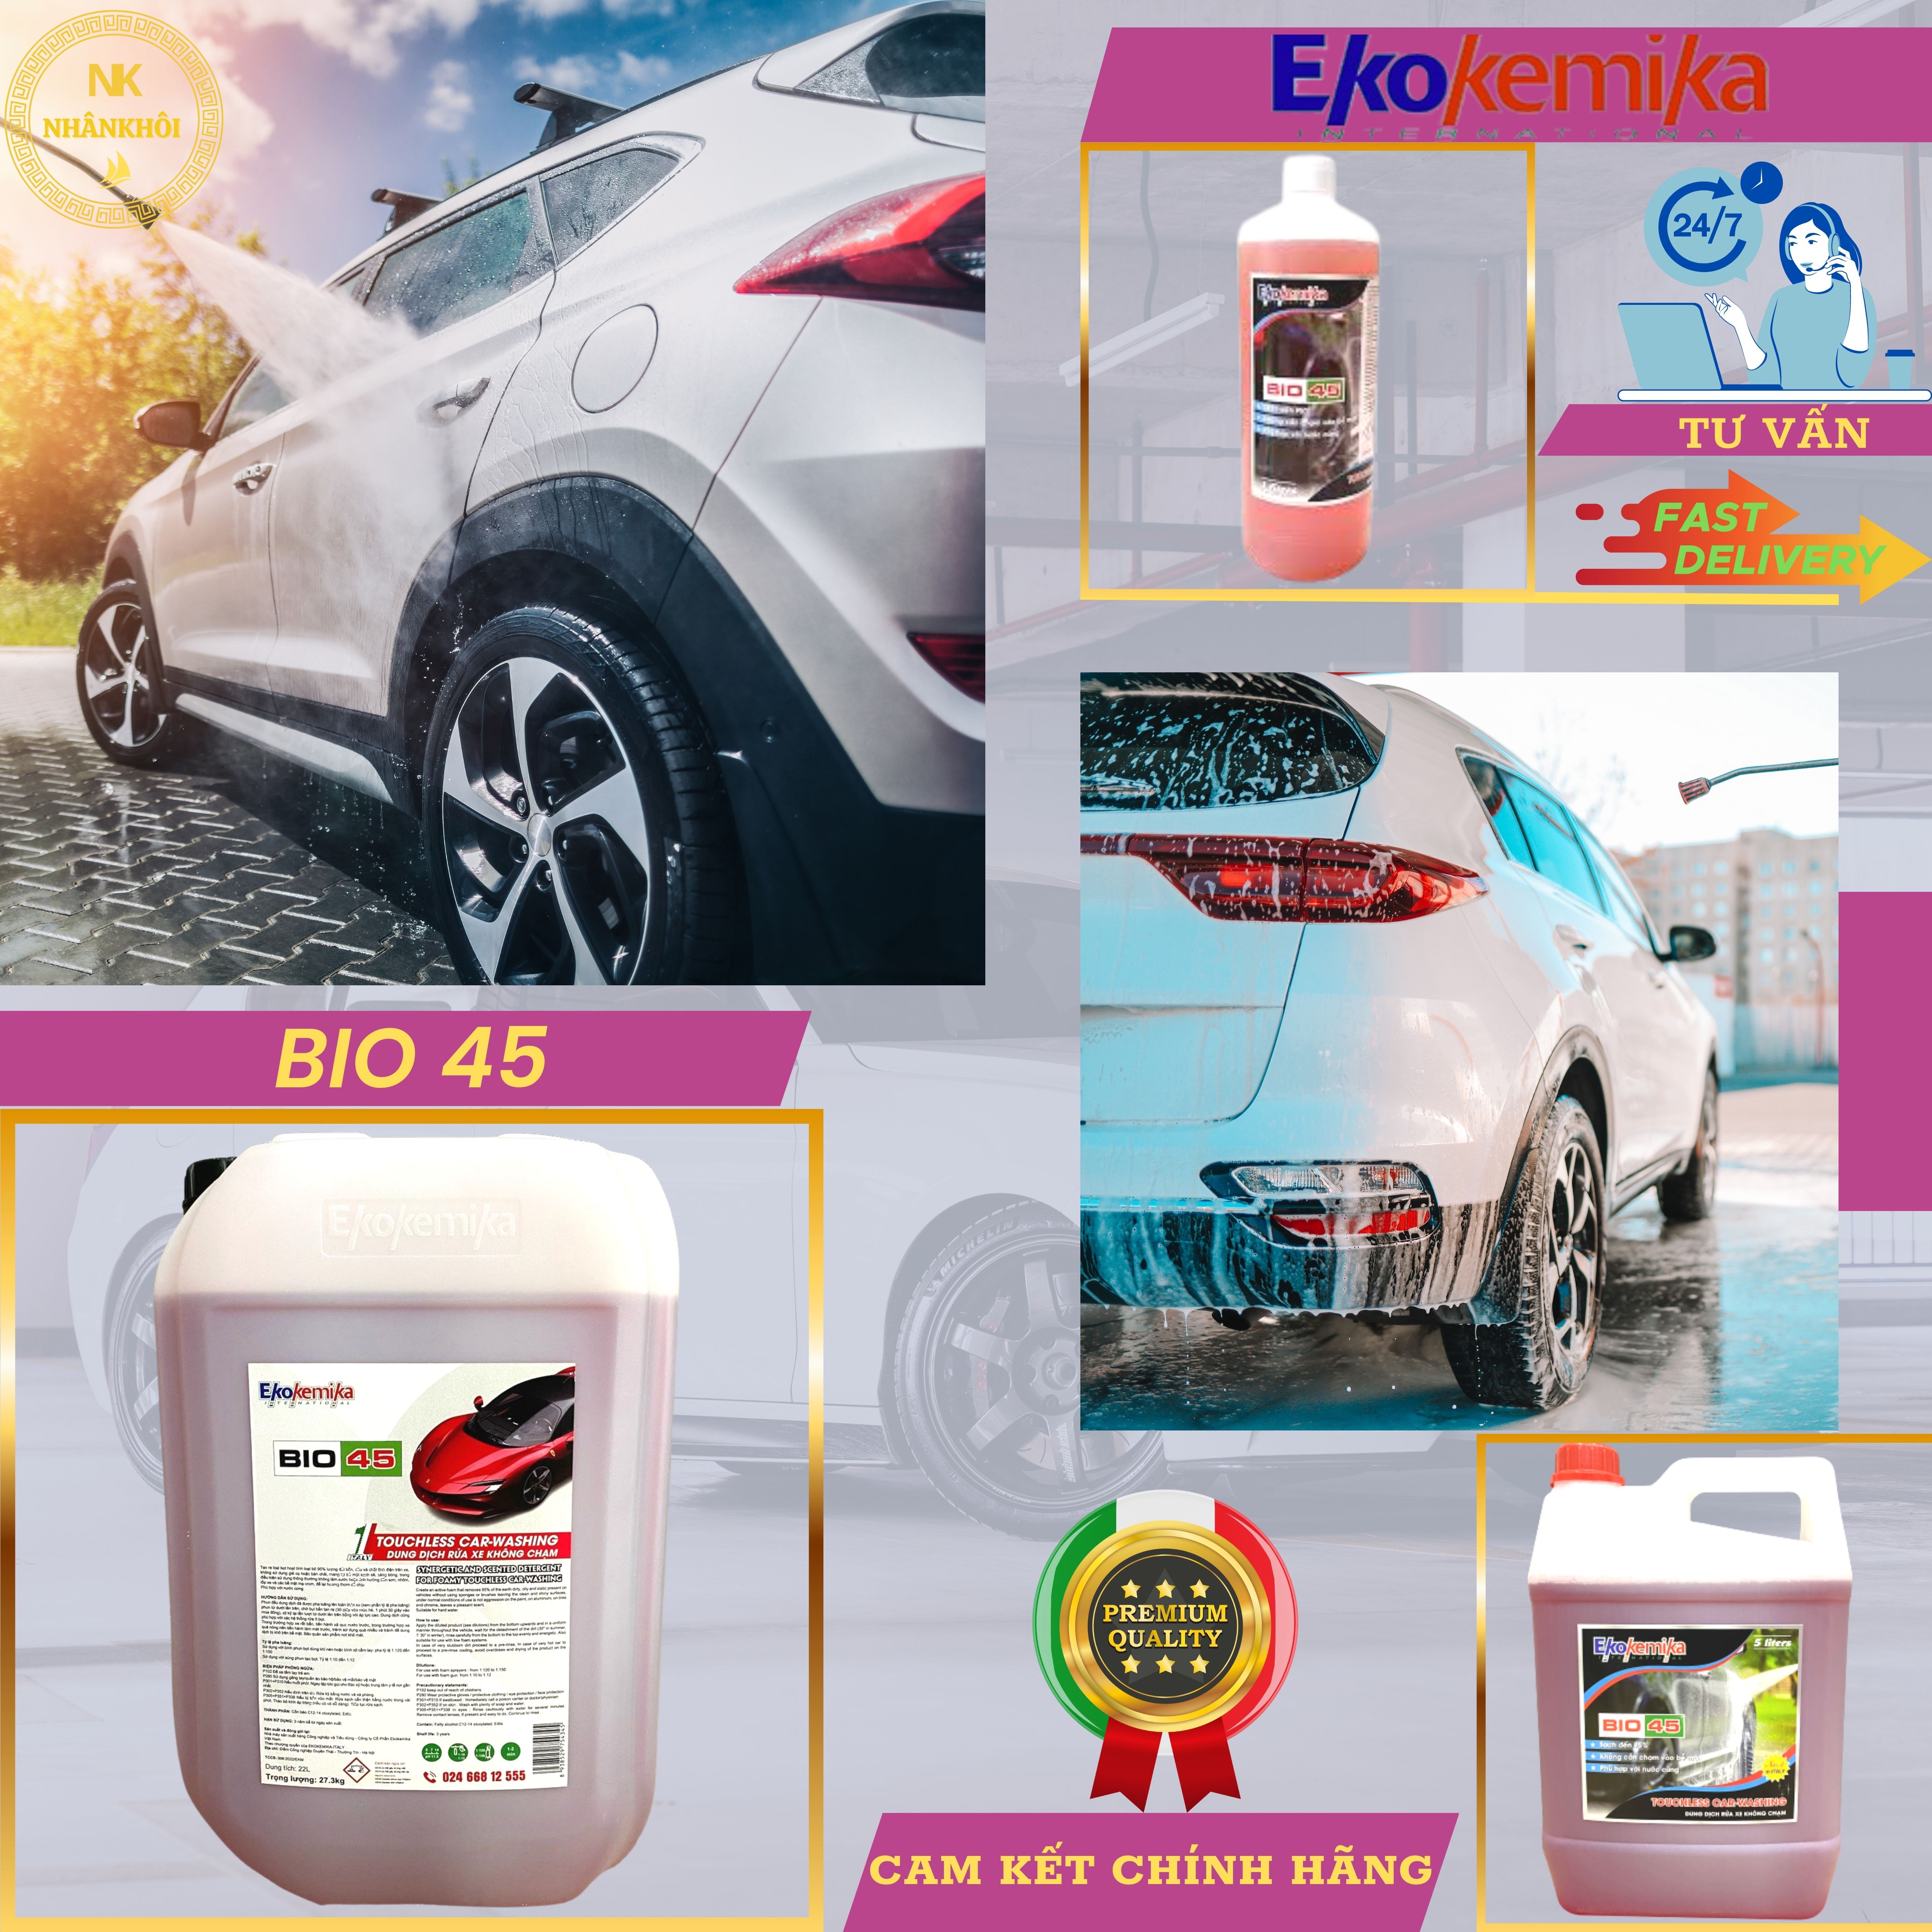 Bio 45 - 1 lít - Dung dịch rửa xe không chạm - Nước rửa xe bọt tuyết - Ekokemika